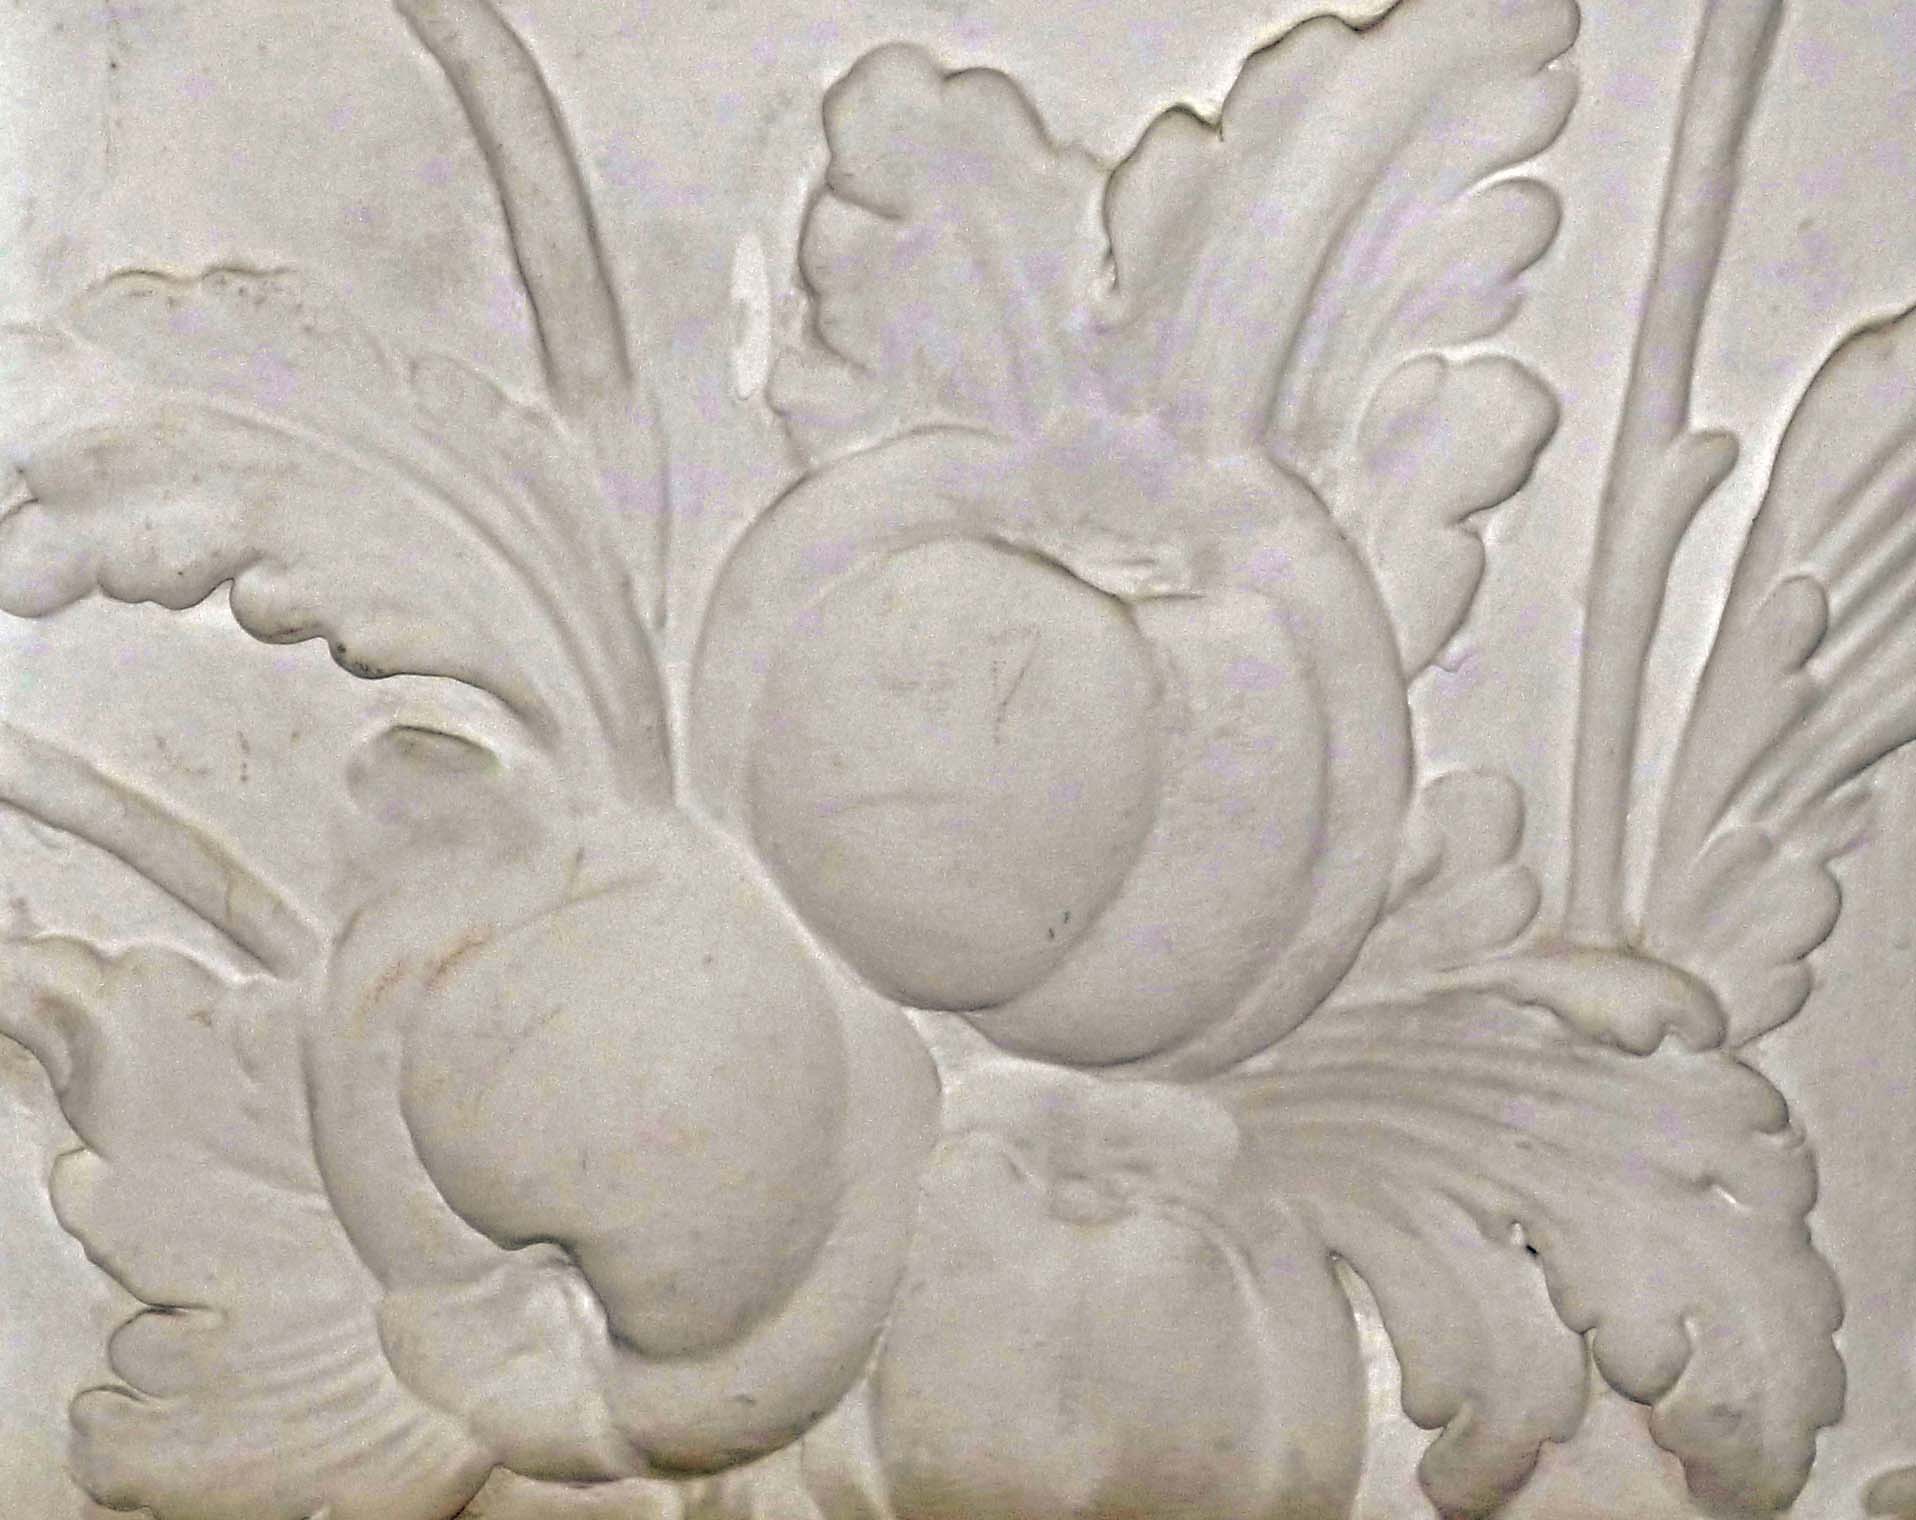 Ignoto, Fregio in scagliola con pomodori, 1940 (Parma, Casa dell'Agricoltura)